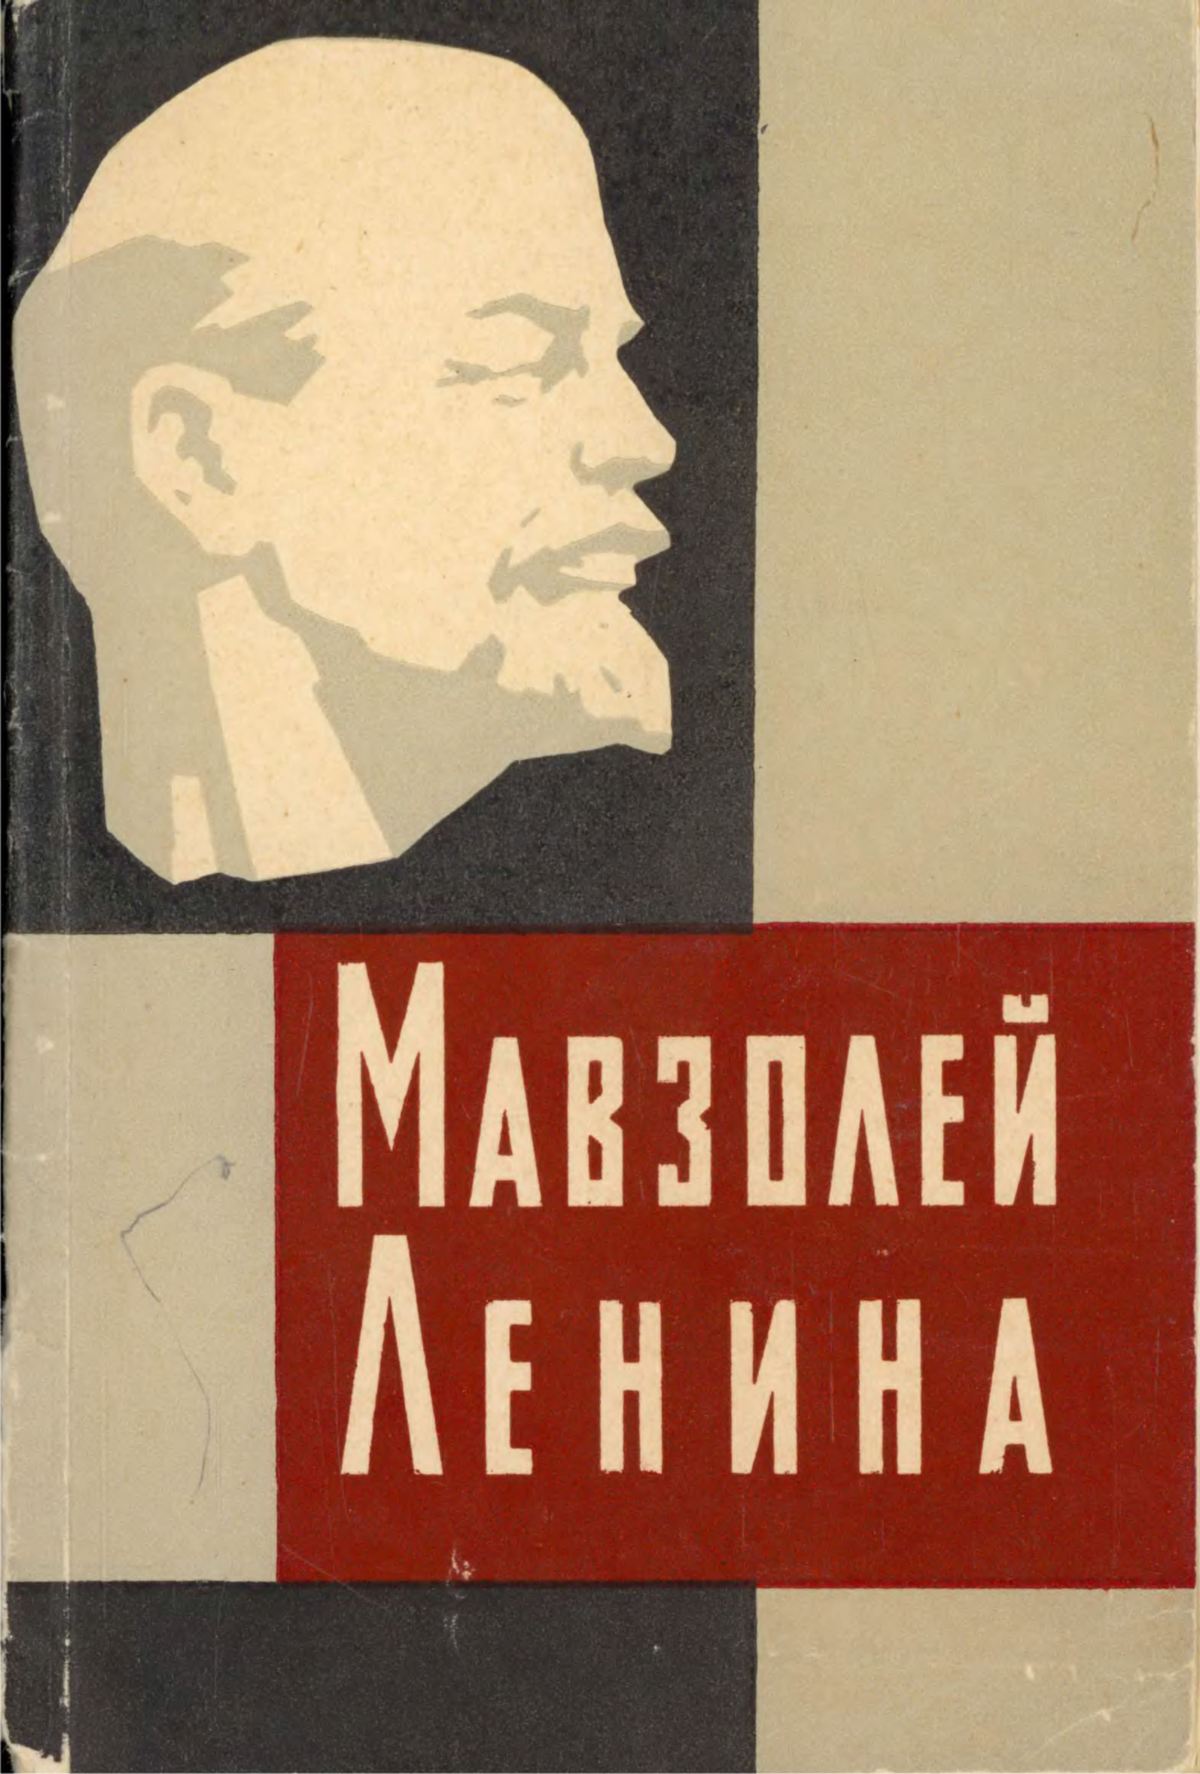 Мавзолей Ленина / А. С. Абрамов. — Москва : Московский рабочий, 1963